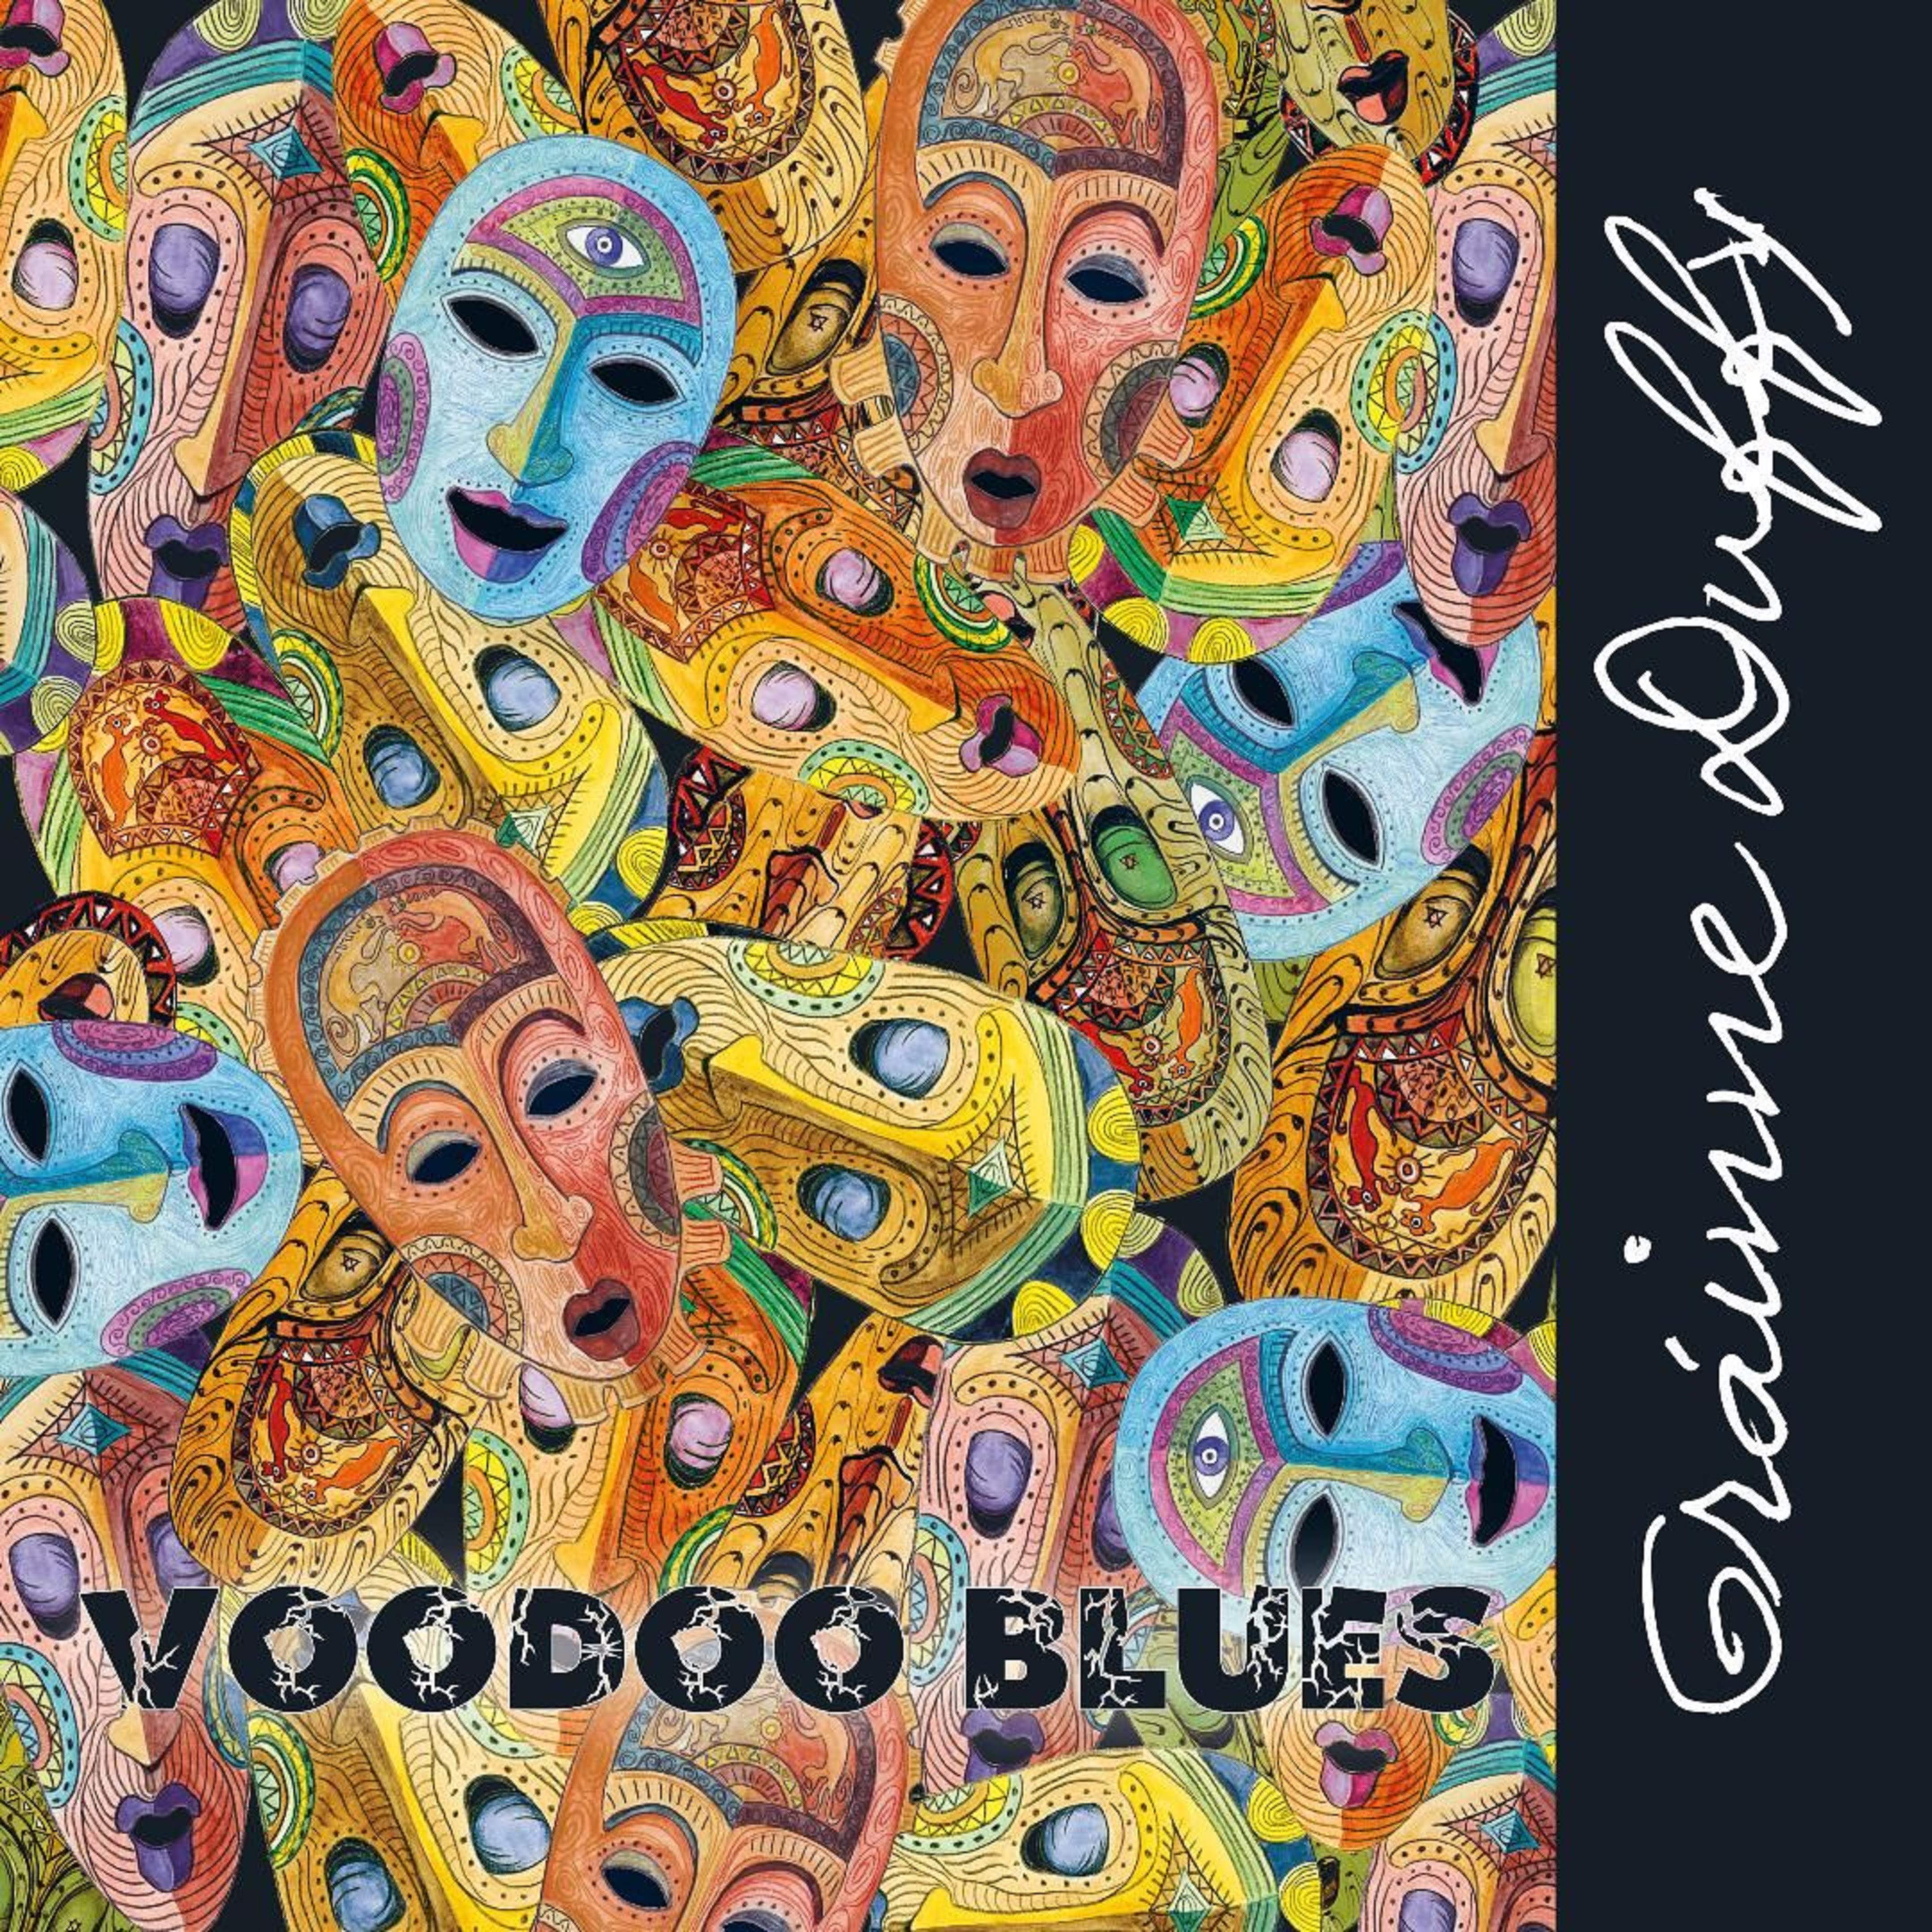 Grainne Duffy releases "VooDoo Blues"